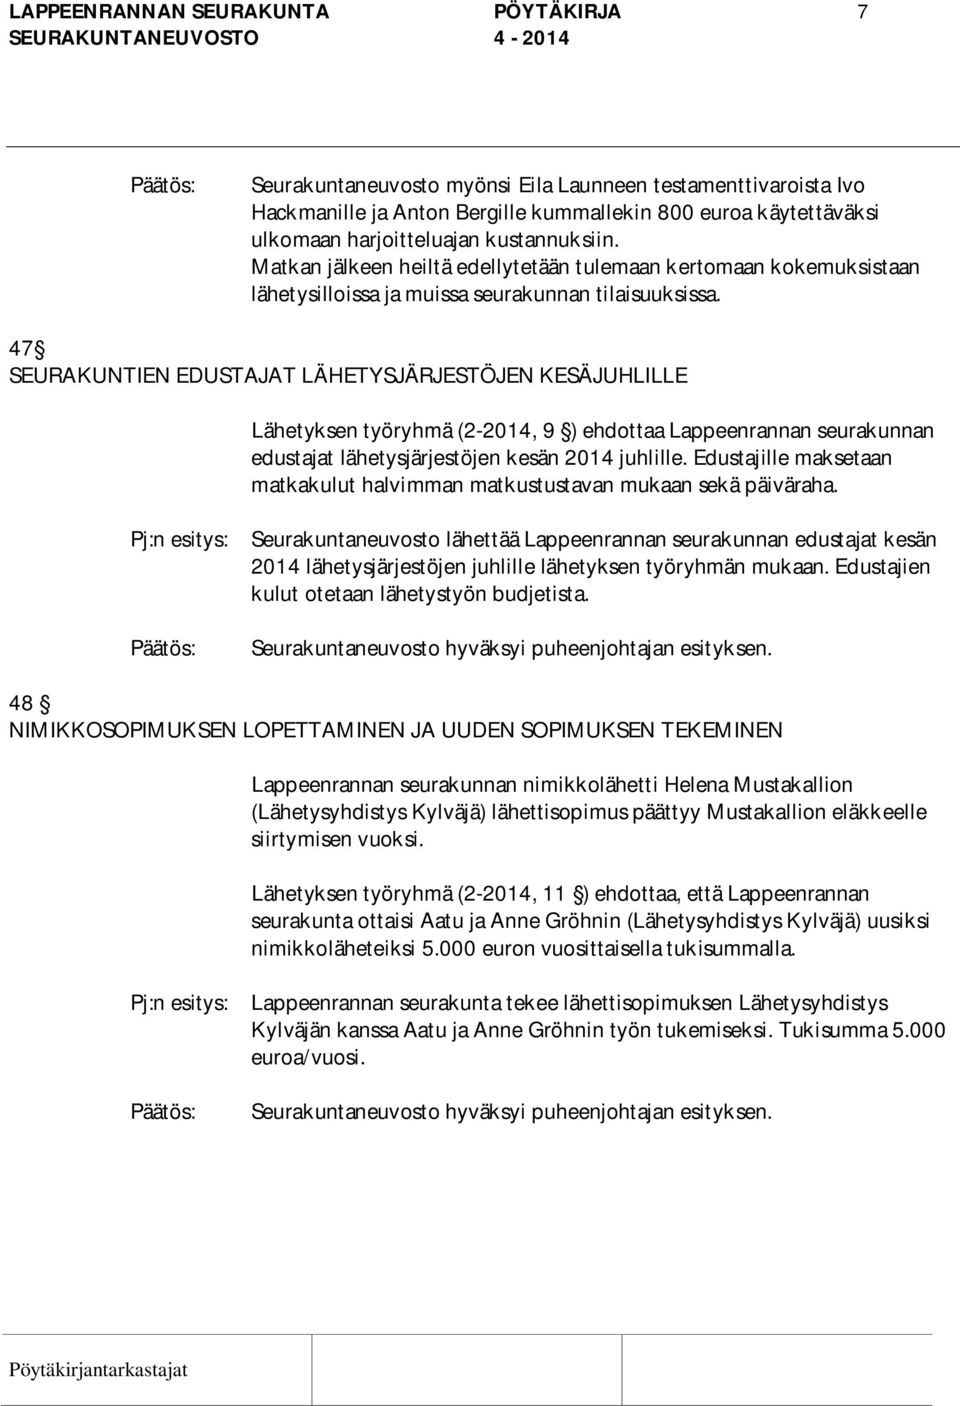 47 SEURAKUNTIEN EDUSTAJAT LÄHETYSJÄRJESTÖJEN KESÄJUHLILLE Lähetyksen työryhmä (2-2014, 9 ) ehdottaa Lappeenrannan seurakunnan edustajat lähetysjärjestöjen kesän 2014 juhlille.